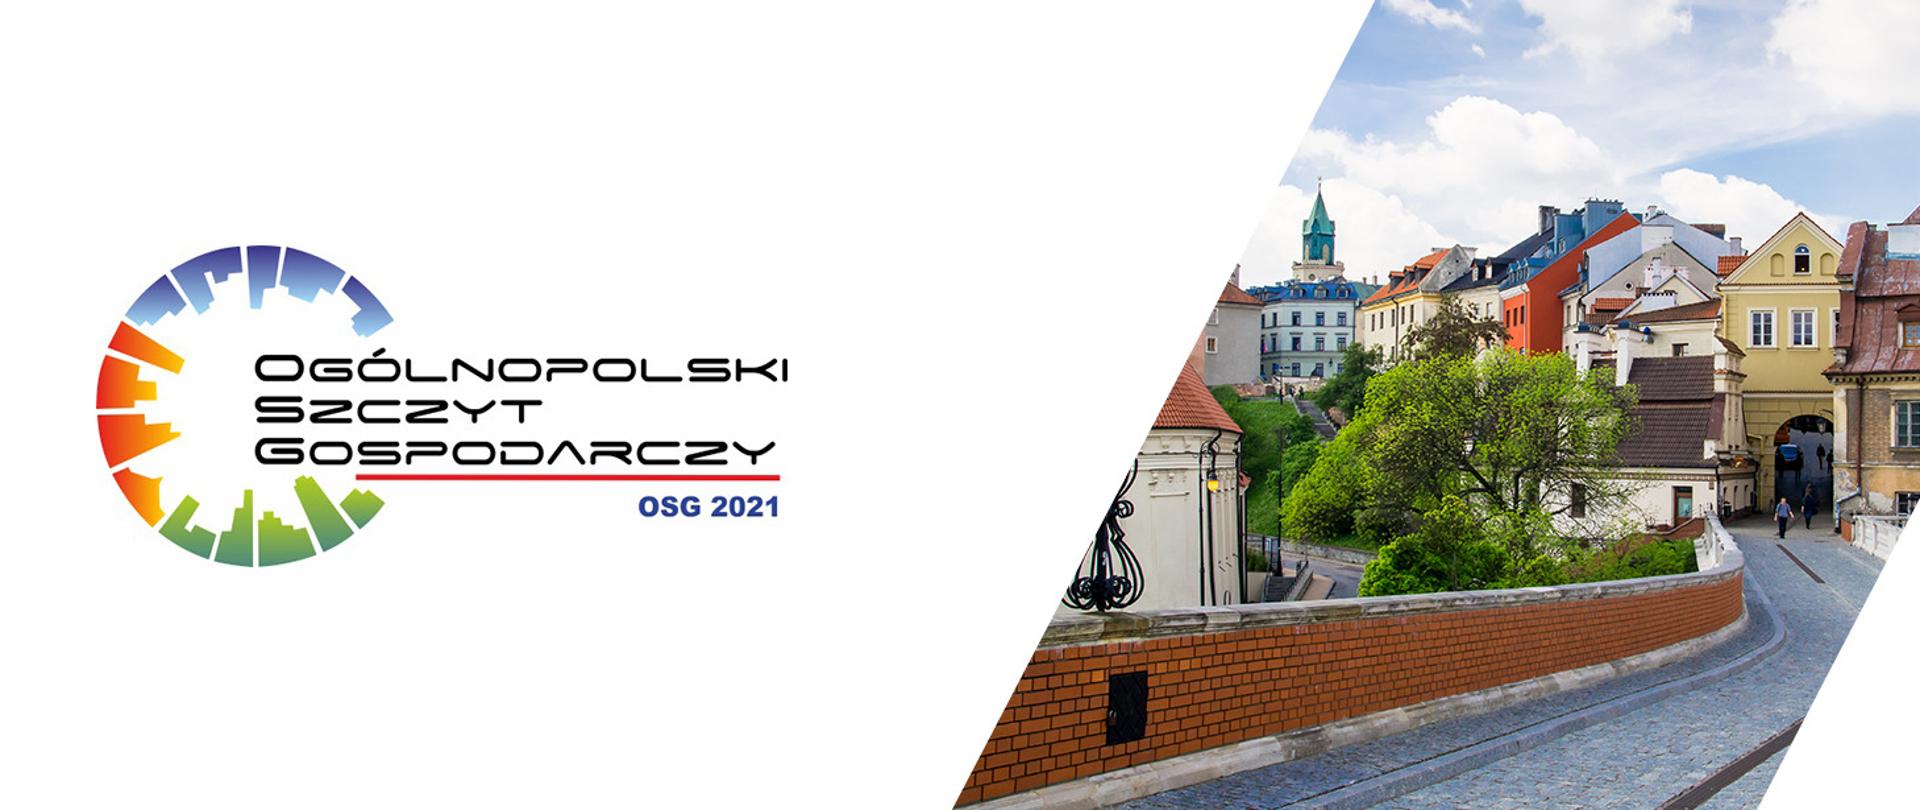 Grafika z zaproszeniem na Ogólnopolski Szczyt Gospodarczy 2021 w Lublinie